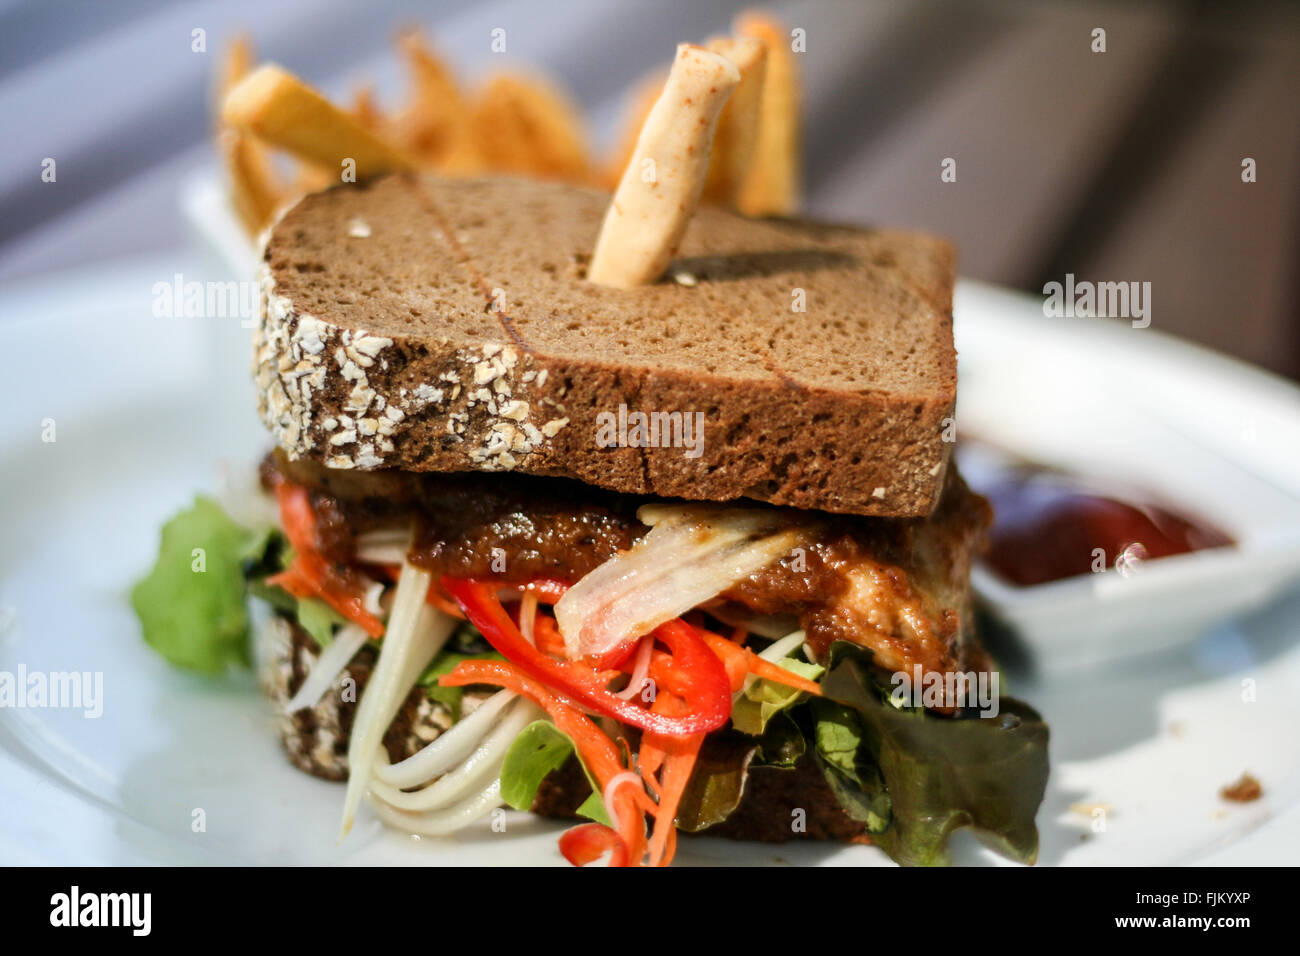 Gluten free chicken sandwich with chips, Sarojin Hotel, Khao Lak, Thailand Stock Photo